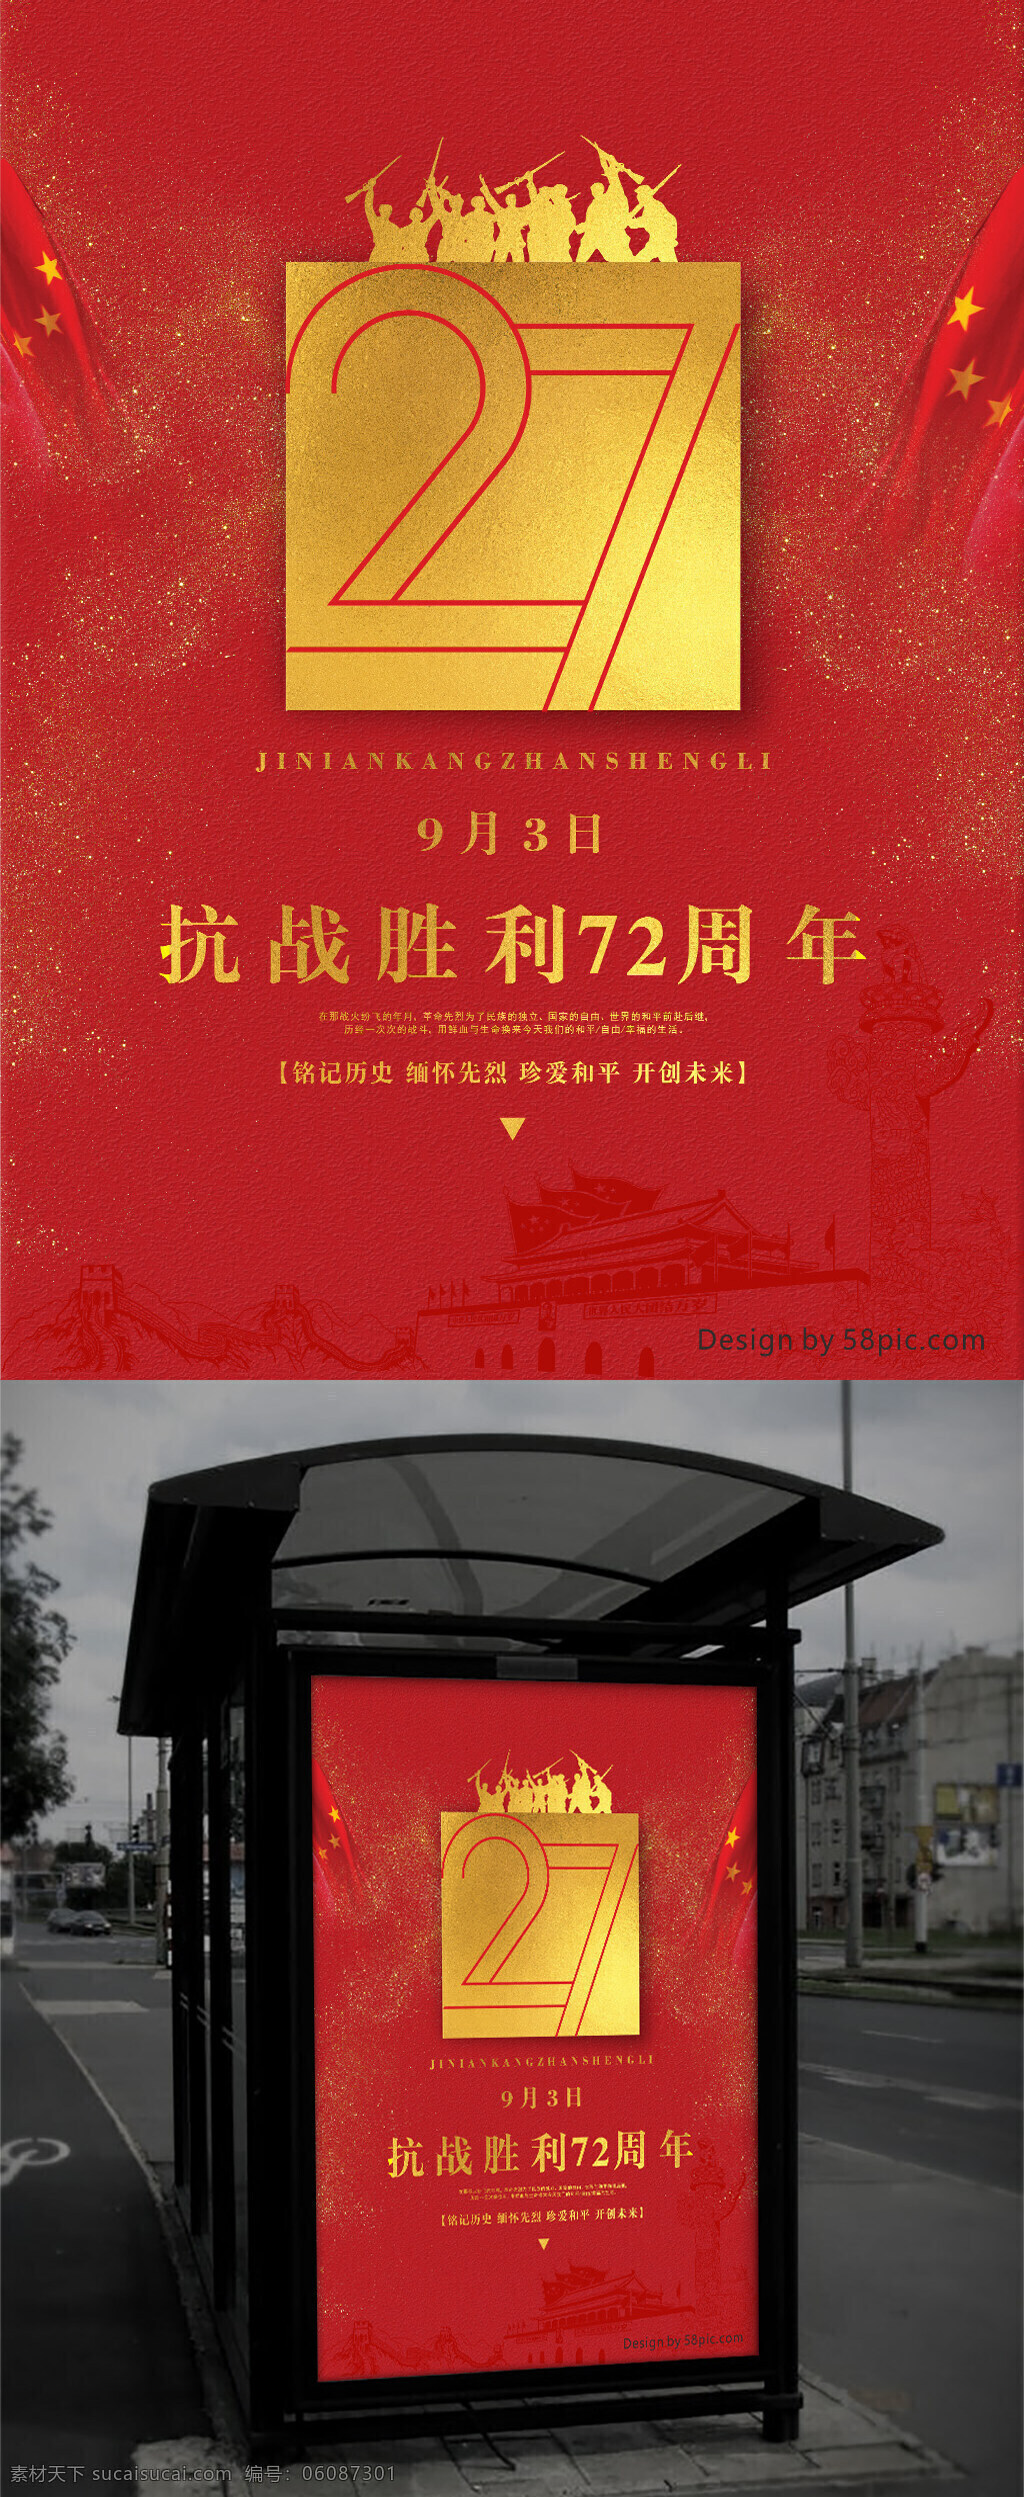 红色 记忆 纪念 抗战 胜利 周年 党建 海报 红色记忆 纪念日 72周年 传统文化 平面设计 9月3日